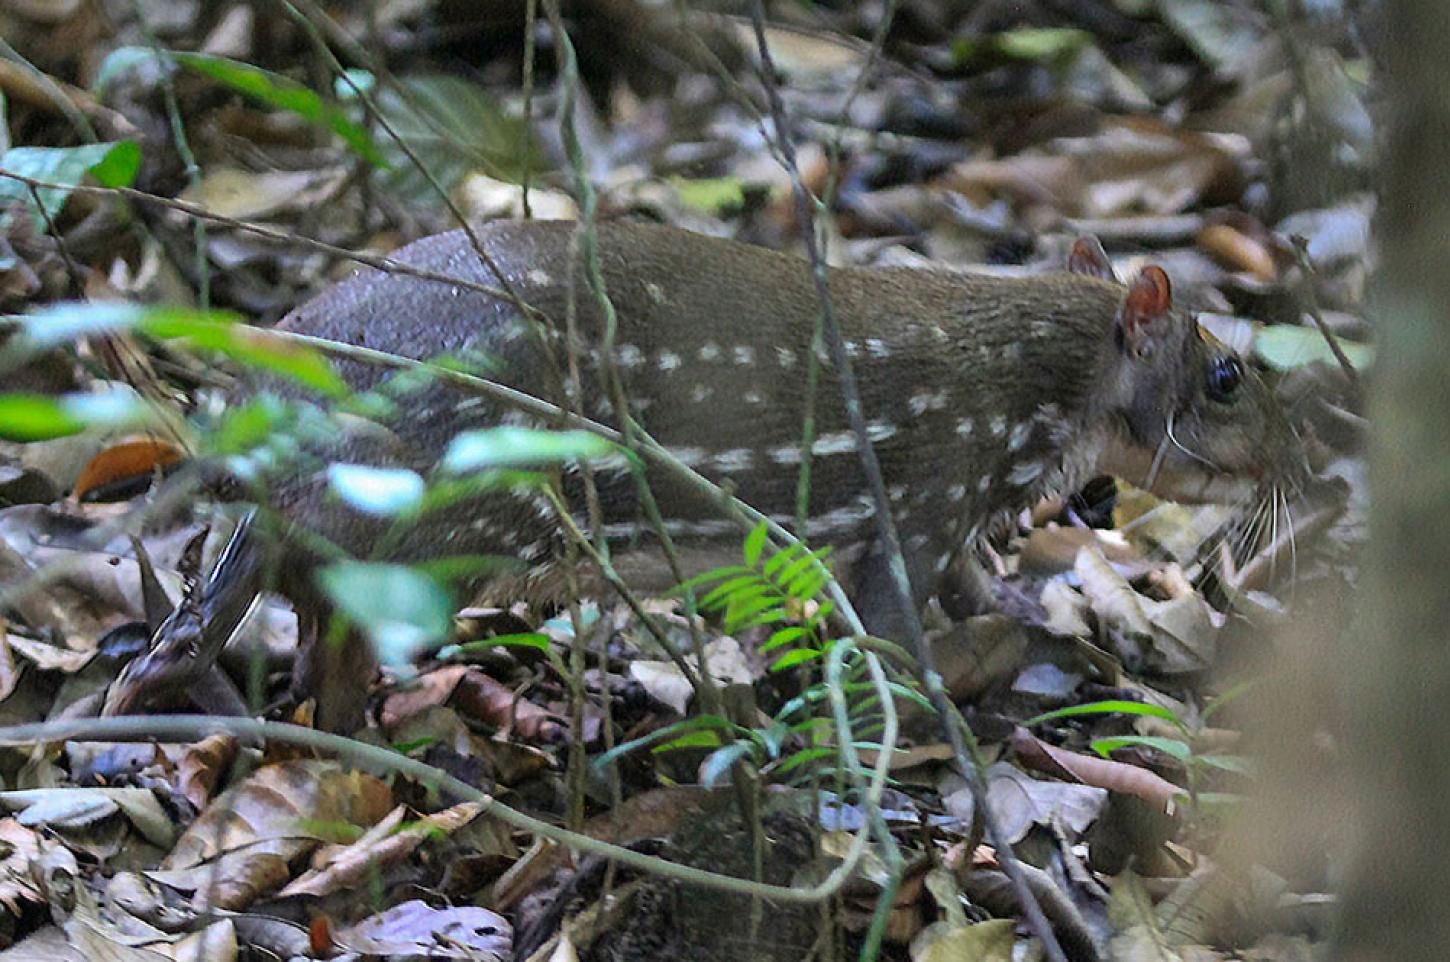 17 animales de fauna silvestre fueron liberados en el suroeste de Antioquia